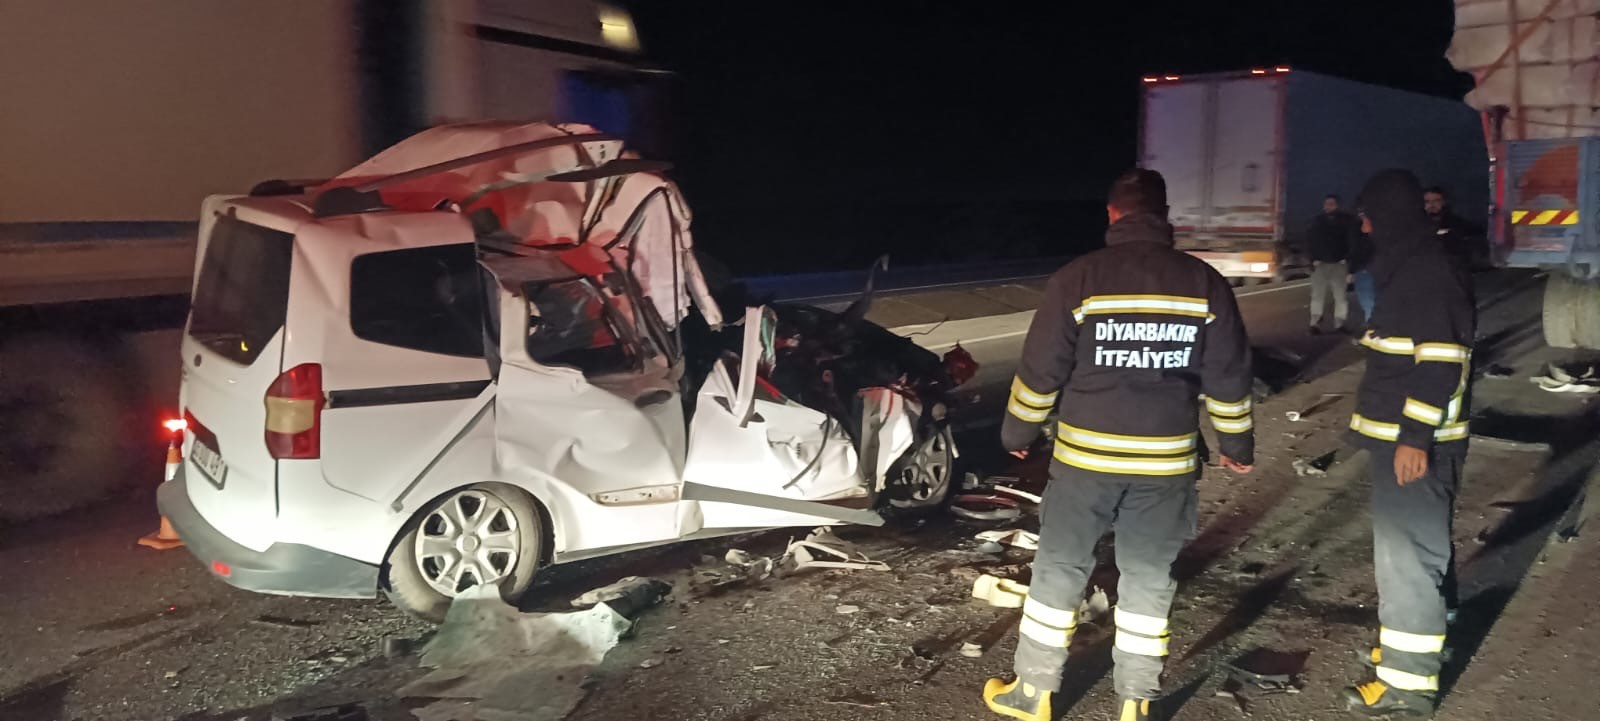 Diyarbakır’da feci kazada 2 kişi hayatını kaybetti